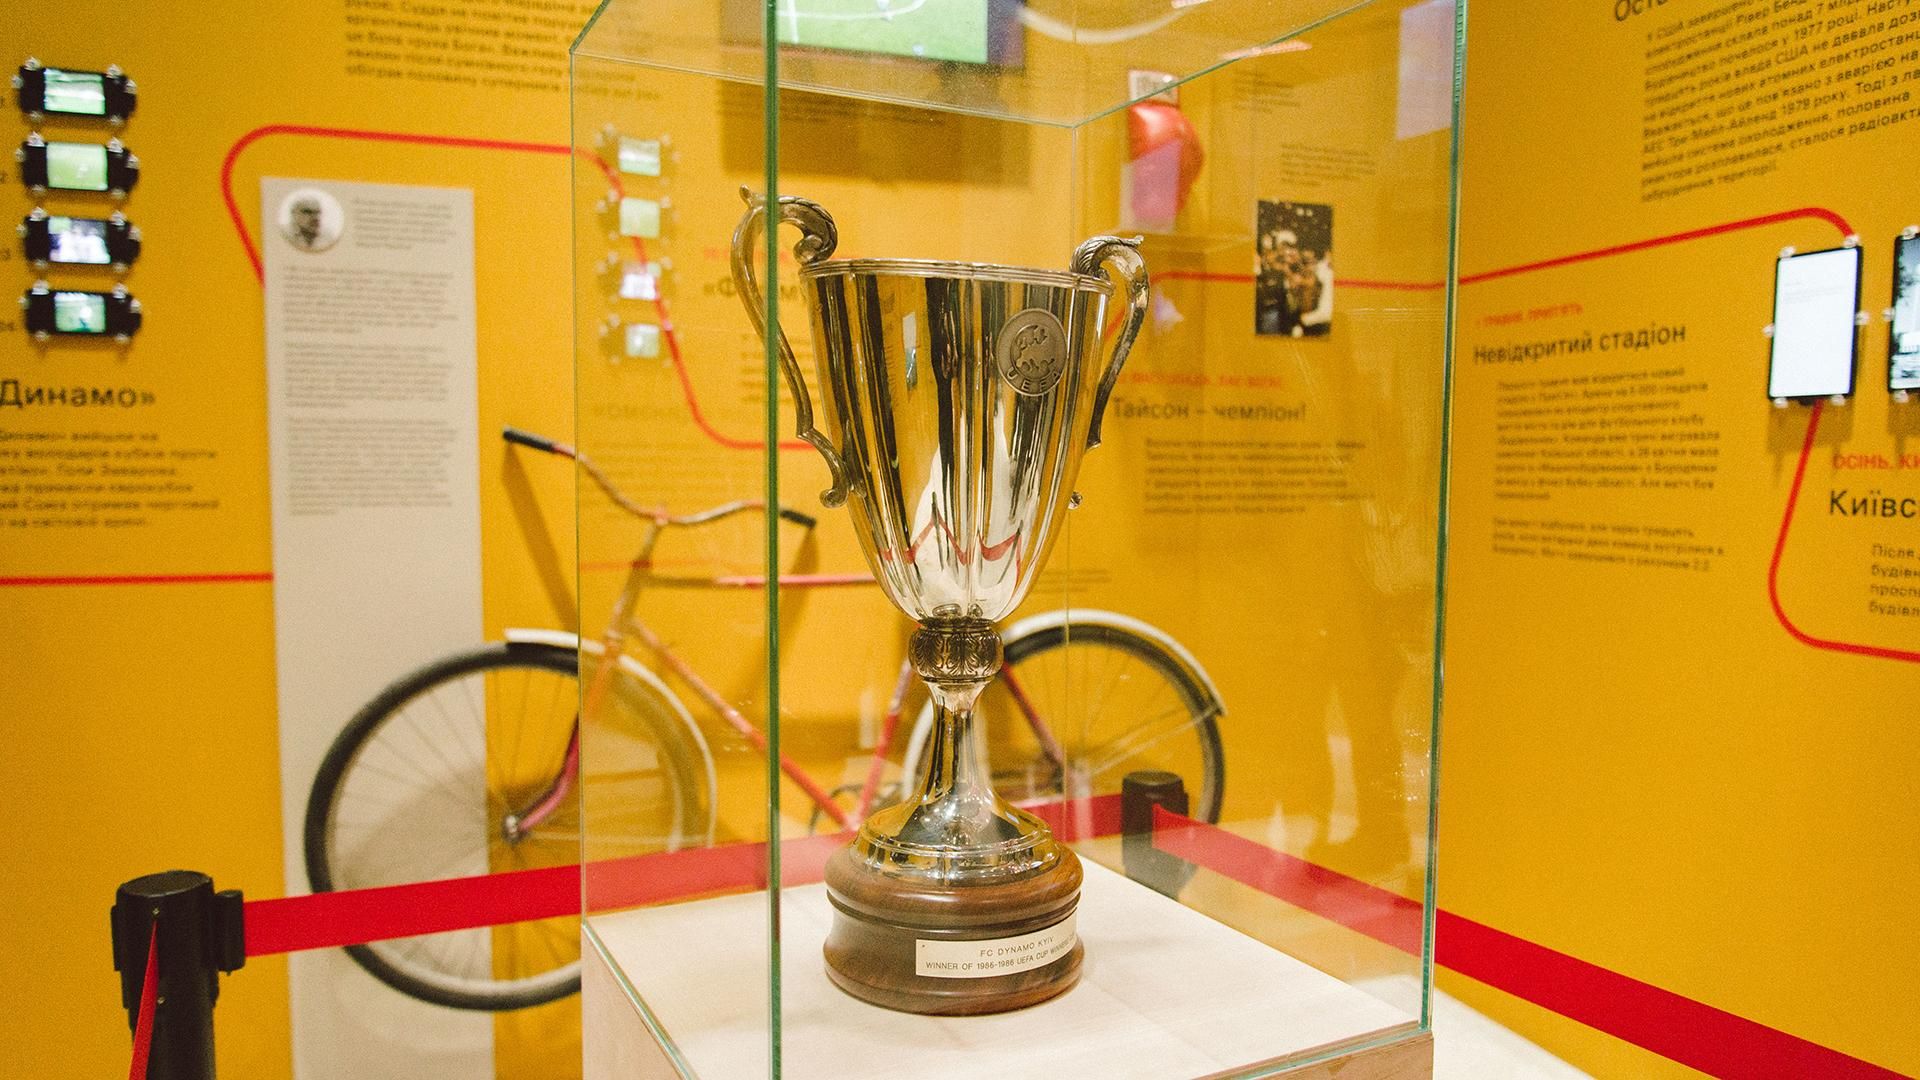 Кубок володарів кубків УЄФА 1986 року виставили на виставці "Чорнобиль. Подорож" на ВДНГ в Києві